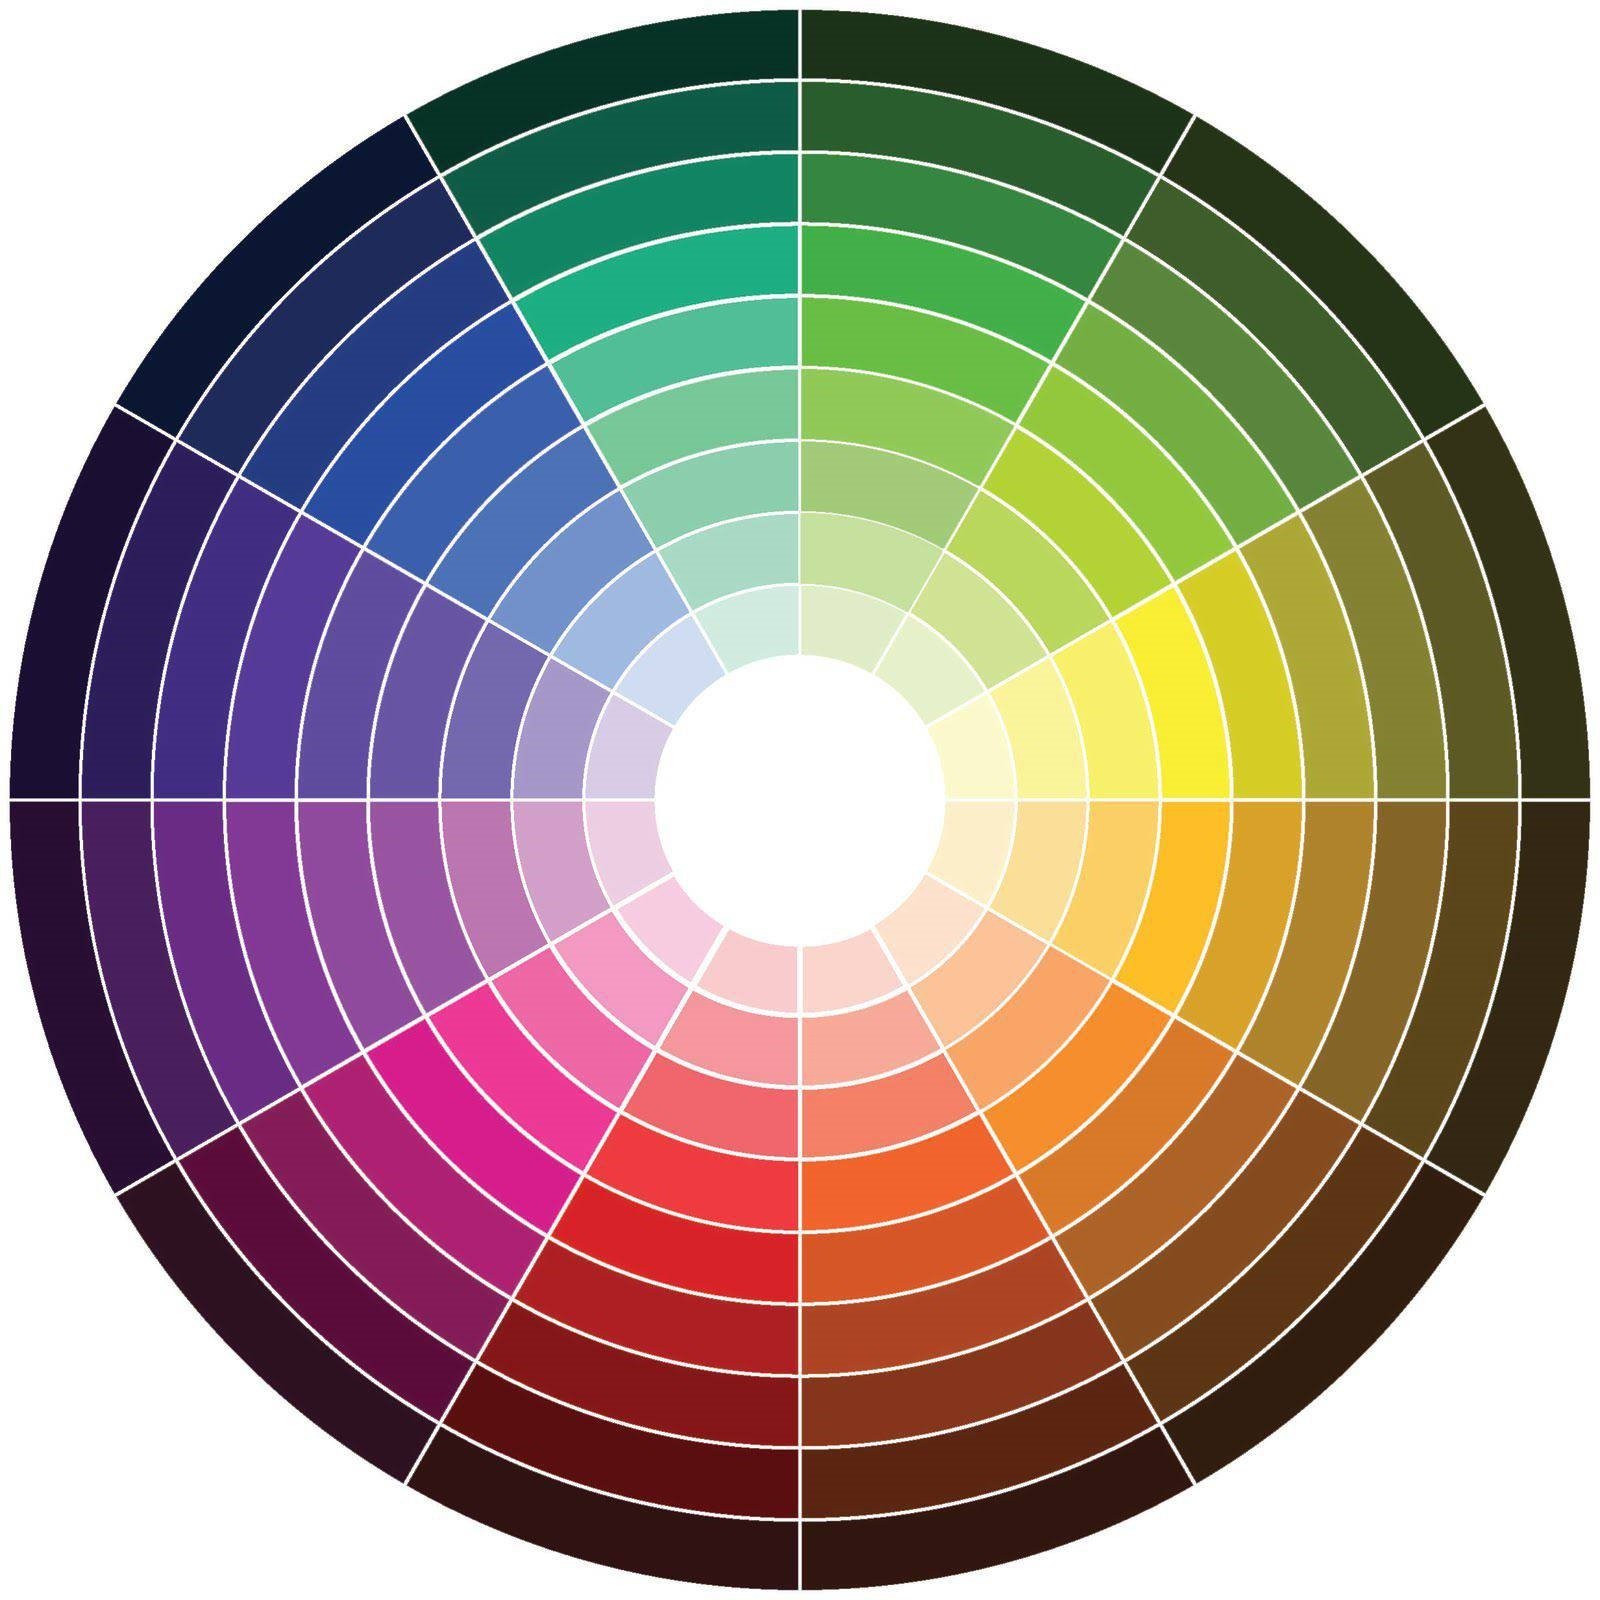 Цветовой круг для теней. Цветовой круг Иттена Гете Освальда. Цветовой круг Иттена 12 цветов. Цветовой круг Вильгельма Освальда. Спектр круг Иттена.